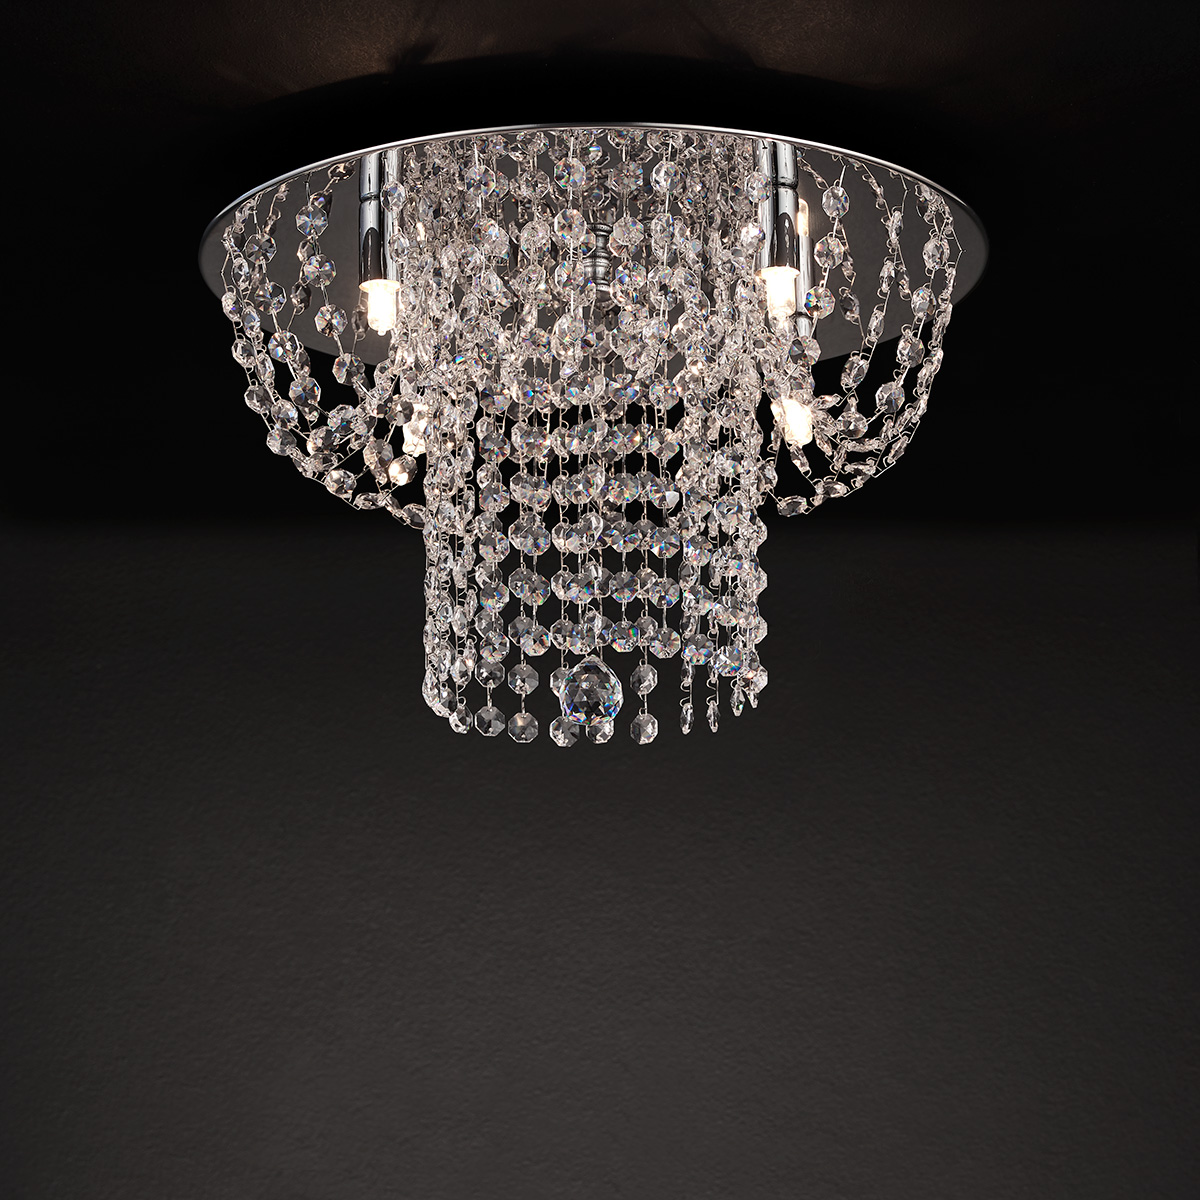 Μοντέρνο φωτιστικό οροφής με κρύσταλλα ΕΡΜΗΣ ceiling lamp with crystal accents